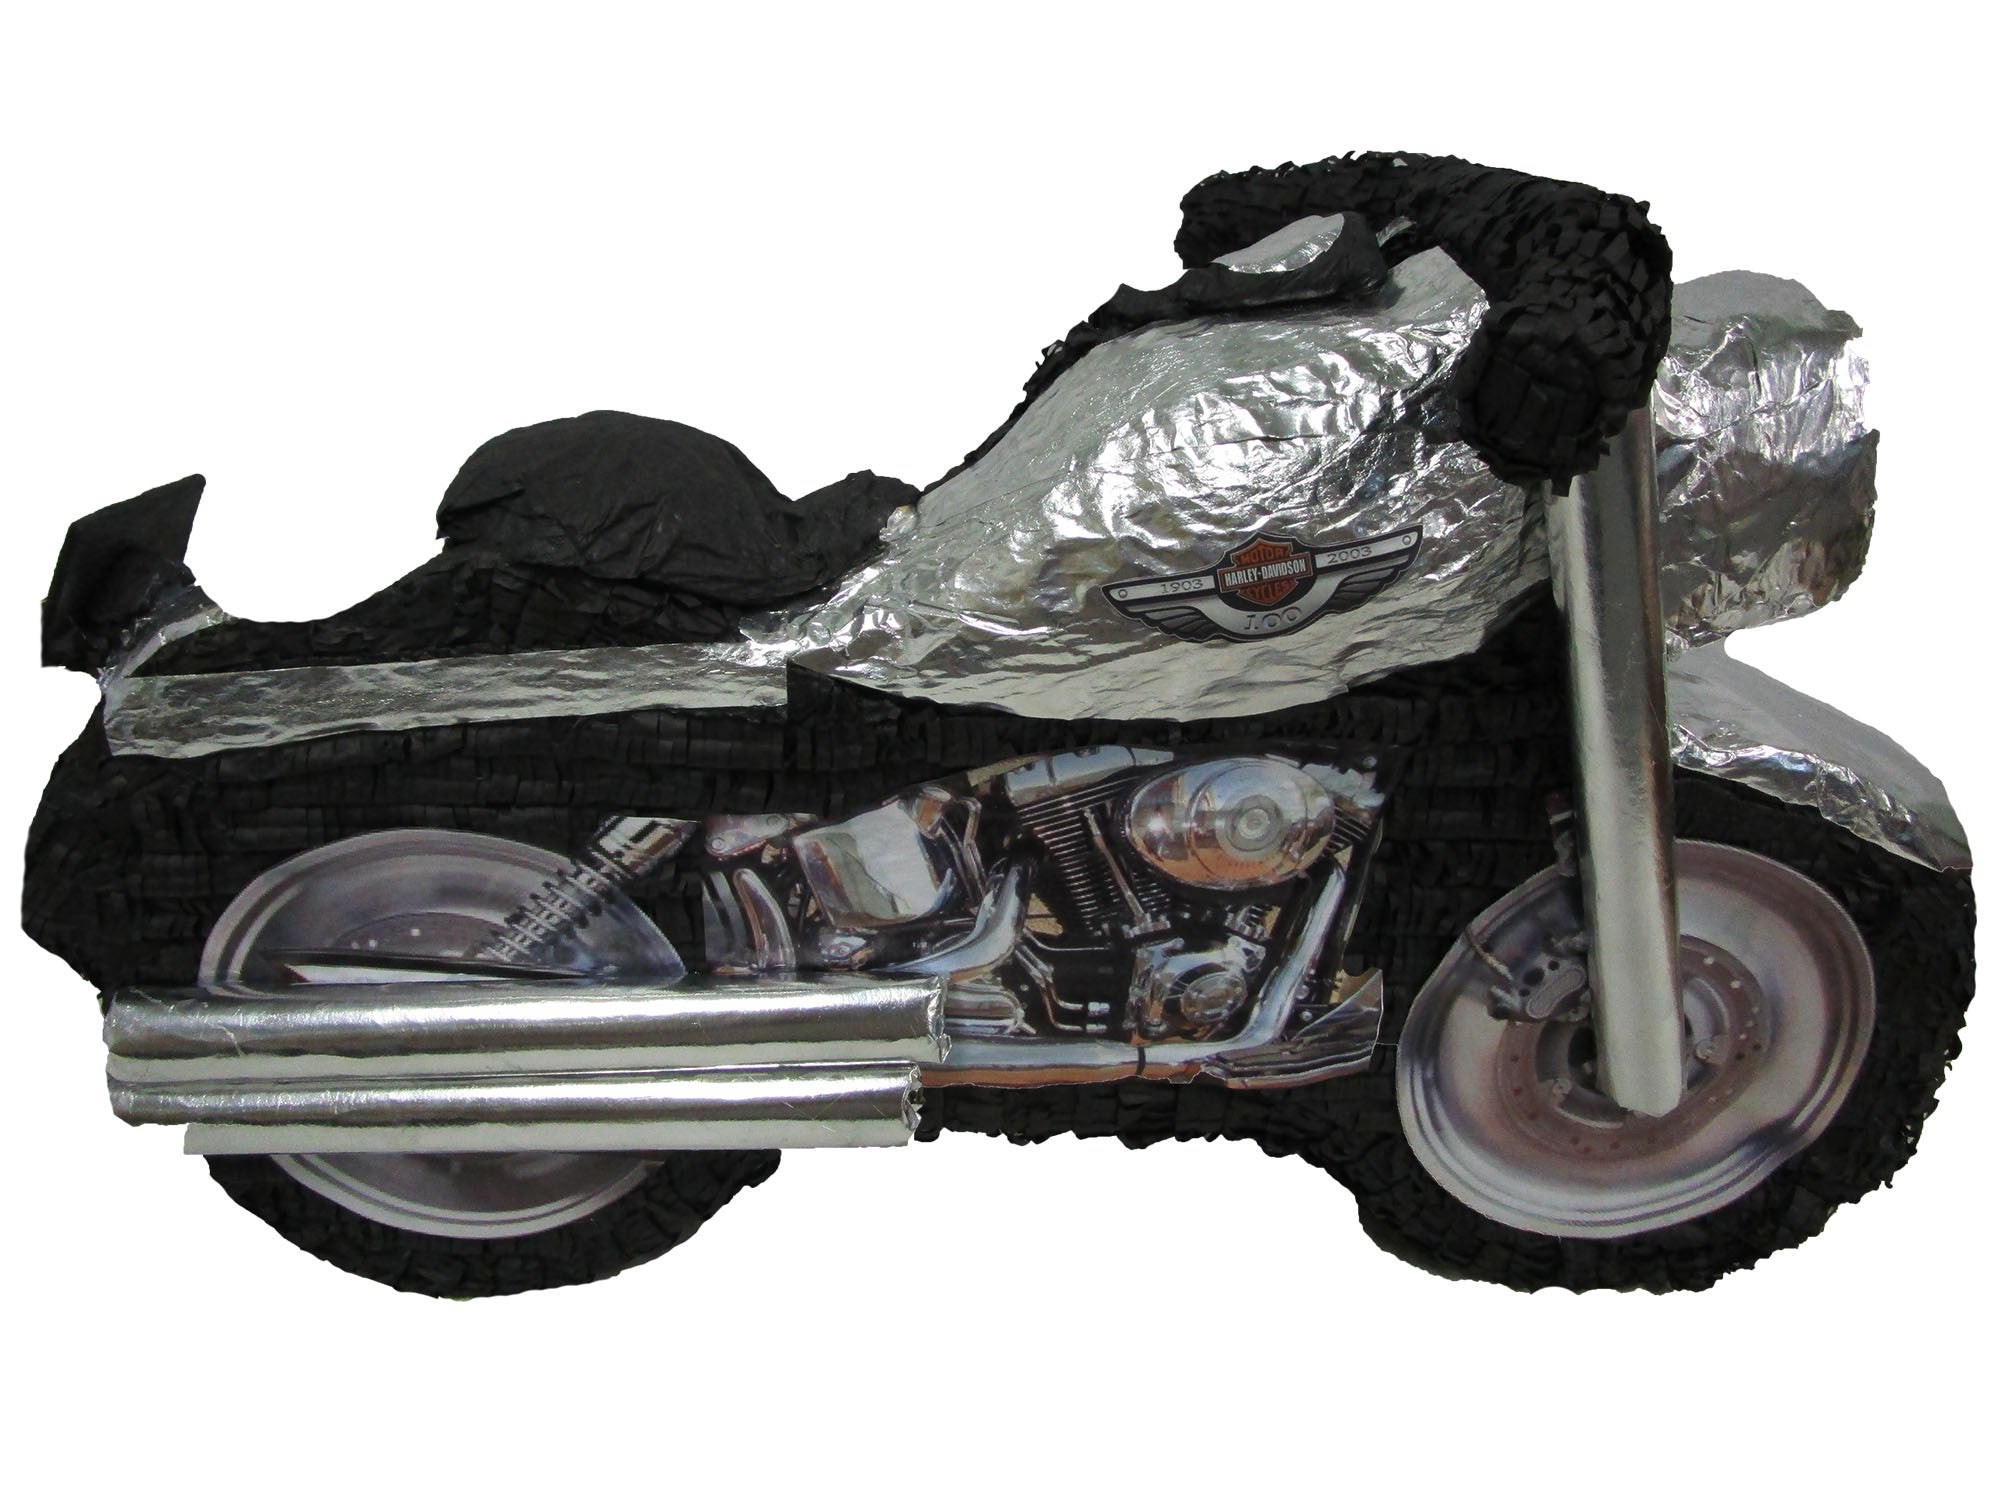 Harley Davidson Fatboy Motorcycle Motor Pinata